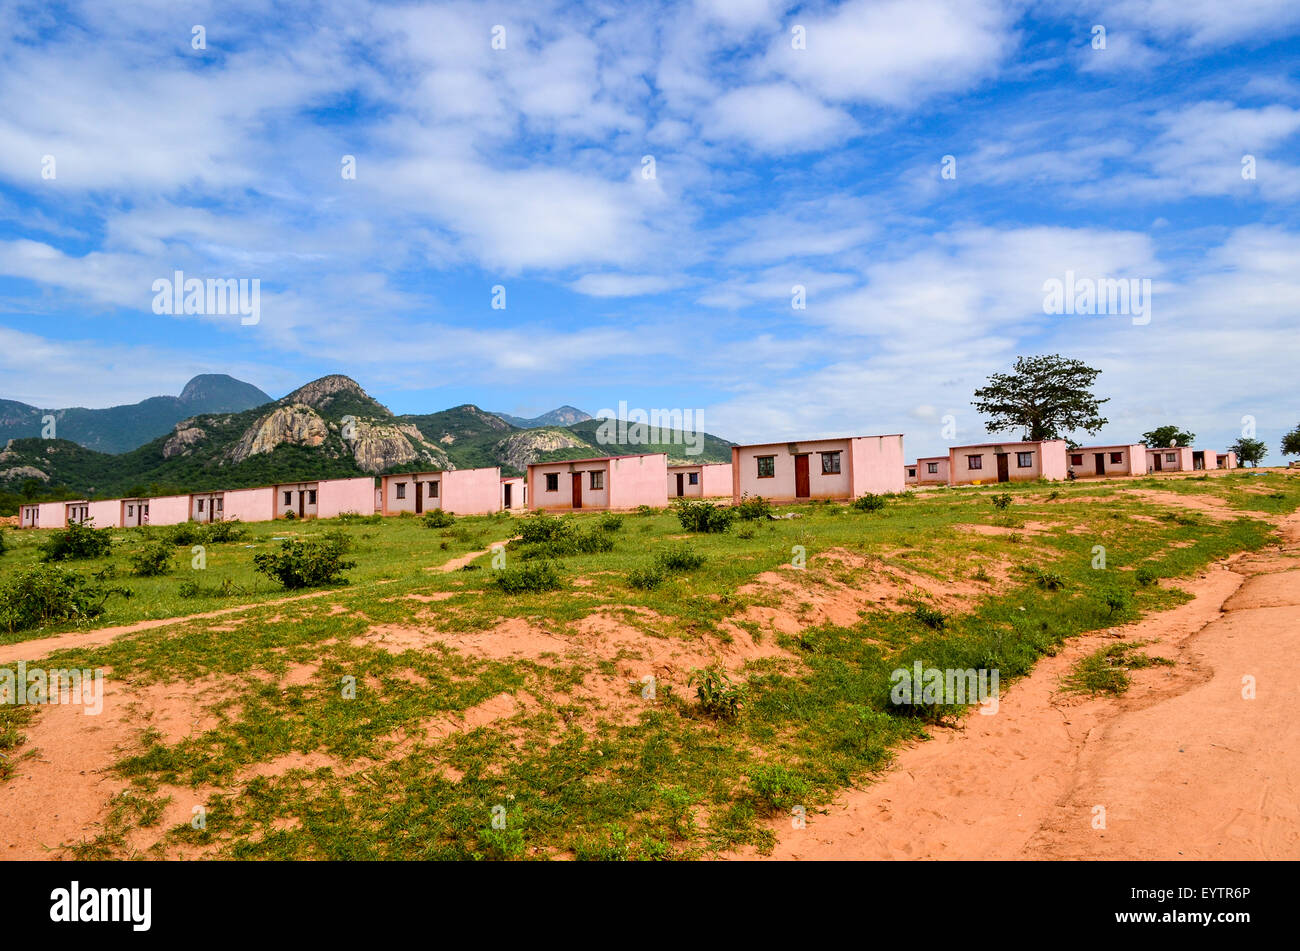 La vivienda pública en la provincia de Namibe, Catanda, Angola Foto de stock